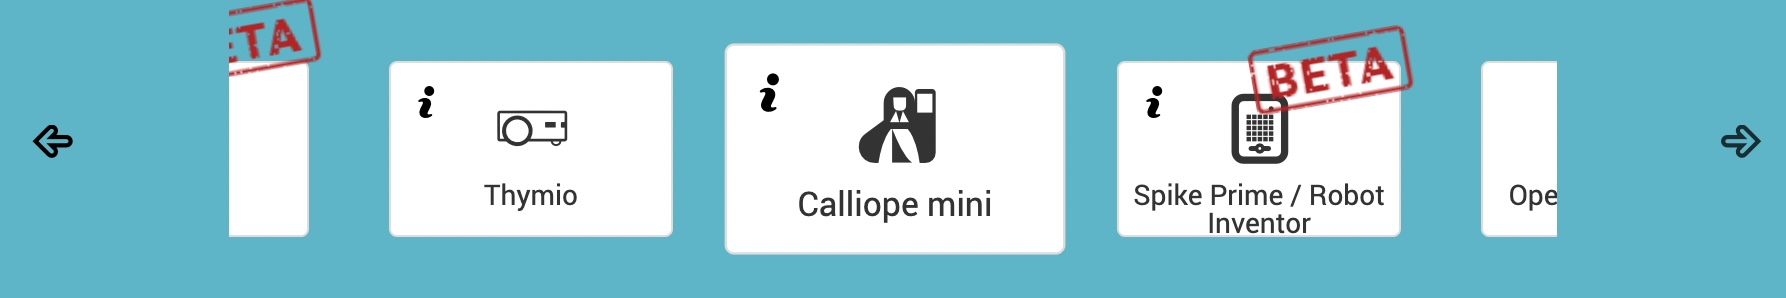 Screenshot Nepo-Editor: Ausschnitt vom Startbildschirm, Calliope mini ist ausgewählt